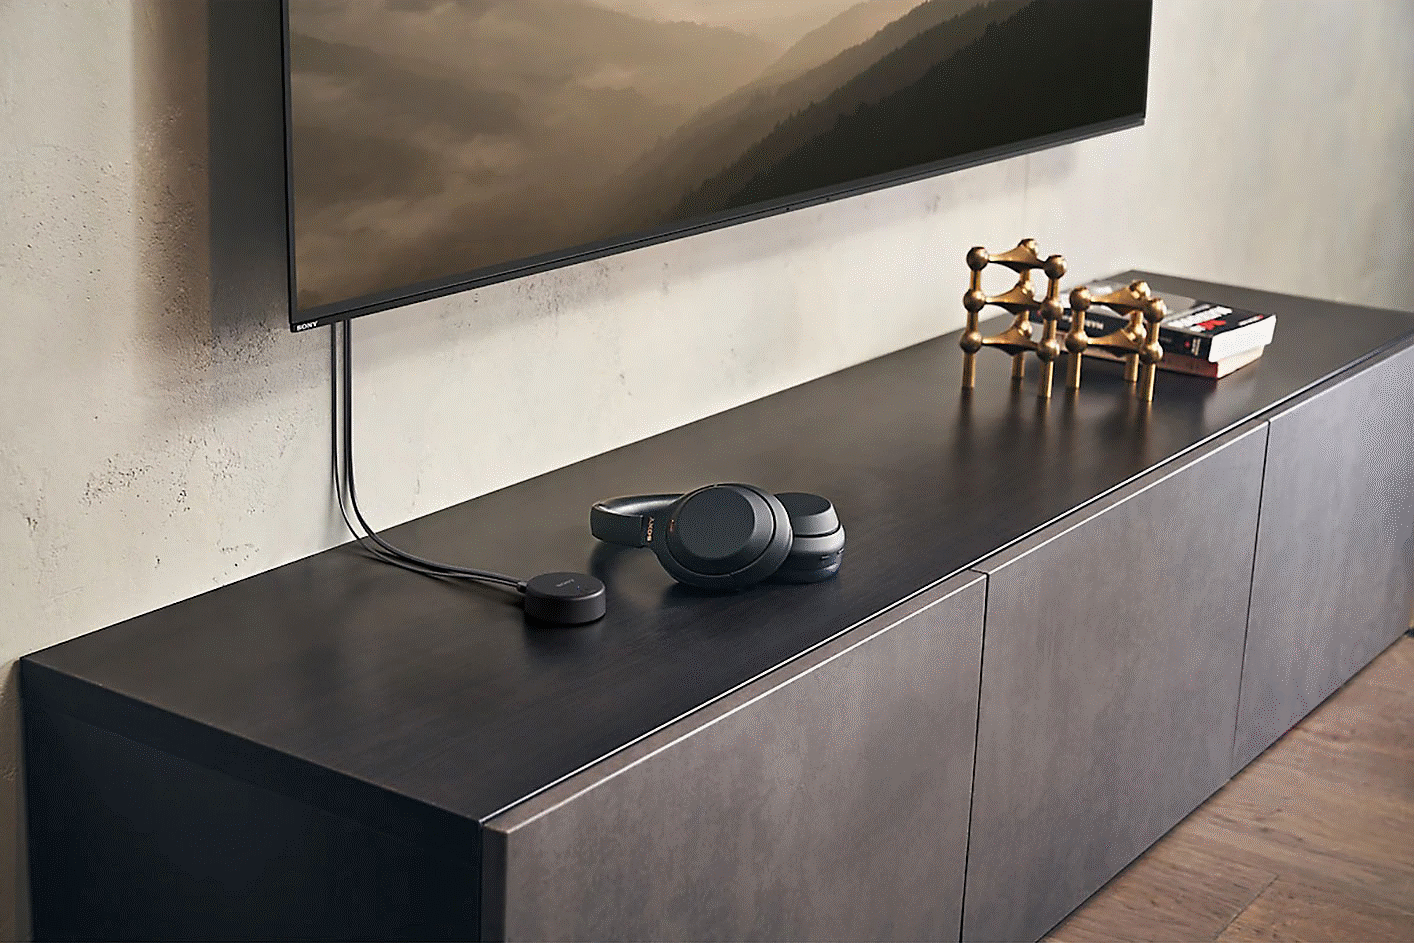 Εικόνα μαύρων ακουστικών Sony WH-CH720 επάνω σε μονάδα τηλεόρασης κάτω από στερεωμένη τηλεόραση